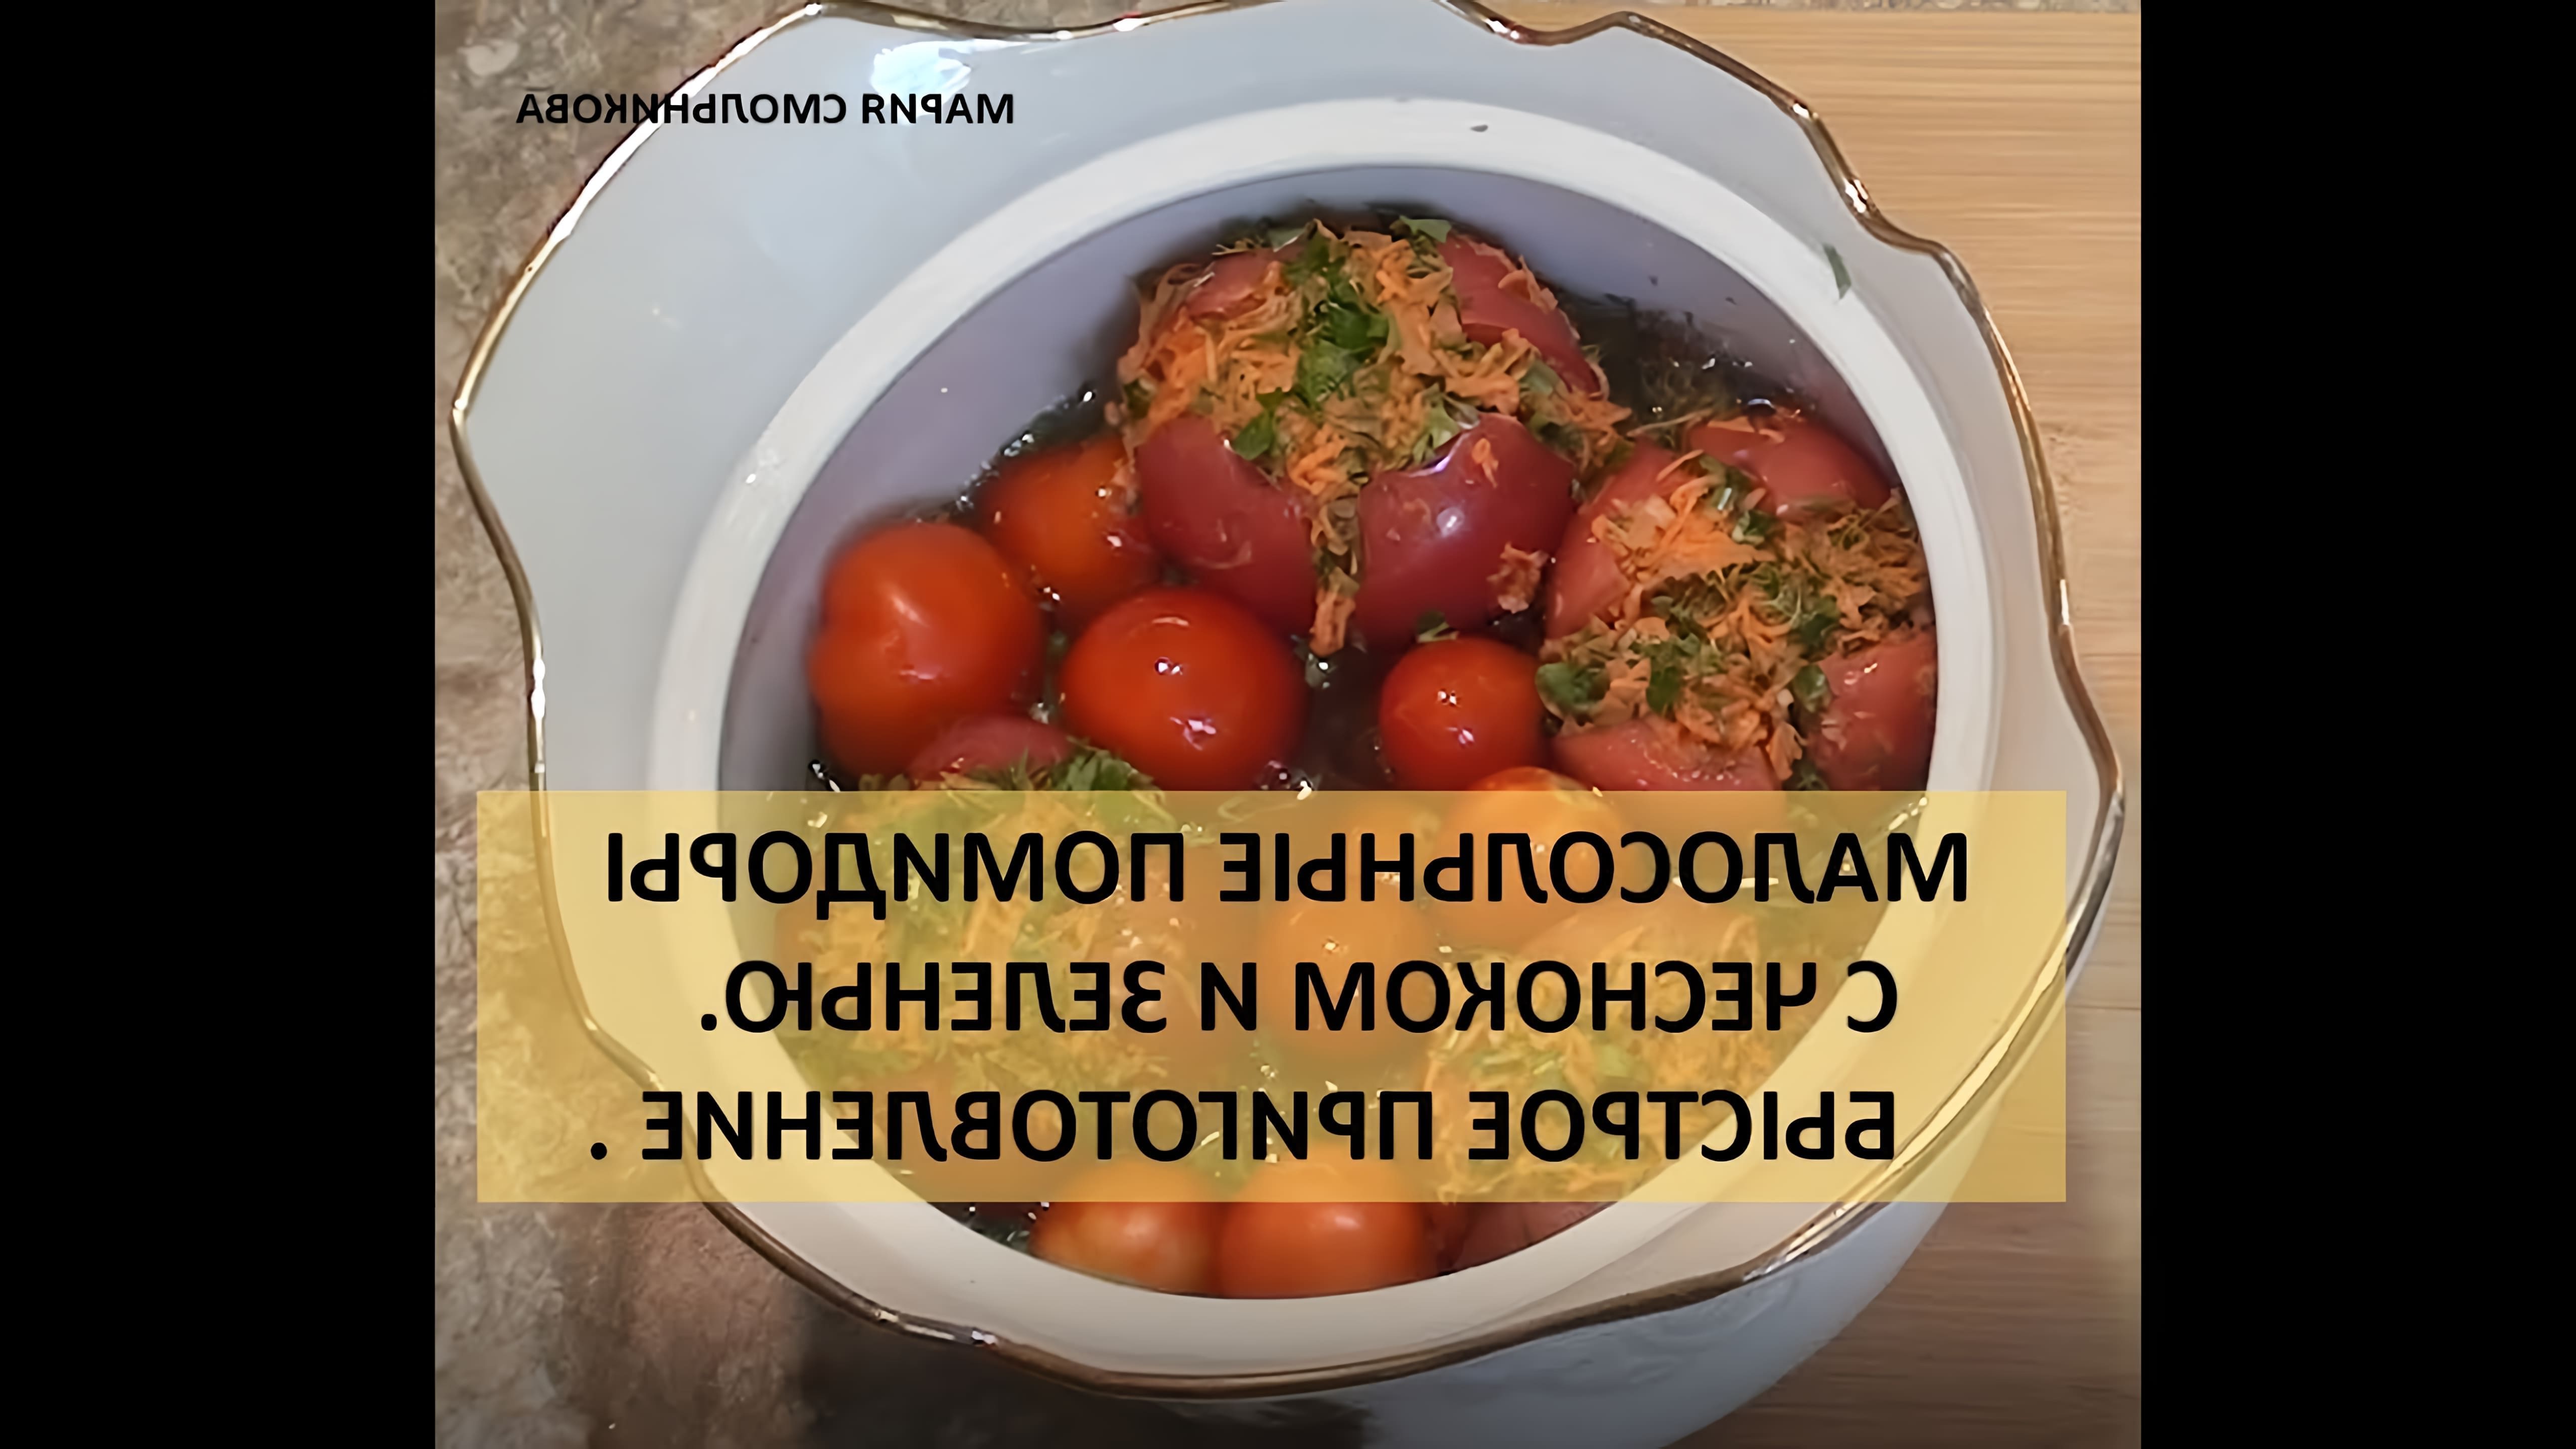 В этом видео демонстрируется процесс приготовления малосольных помидоров с чесноком и зеленью